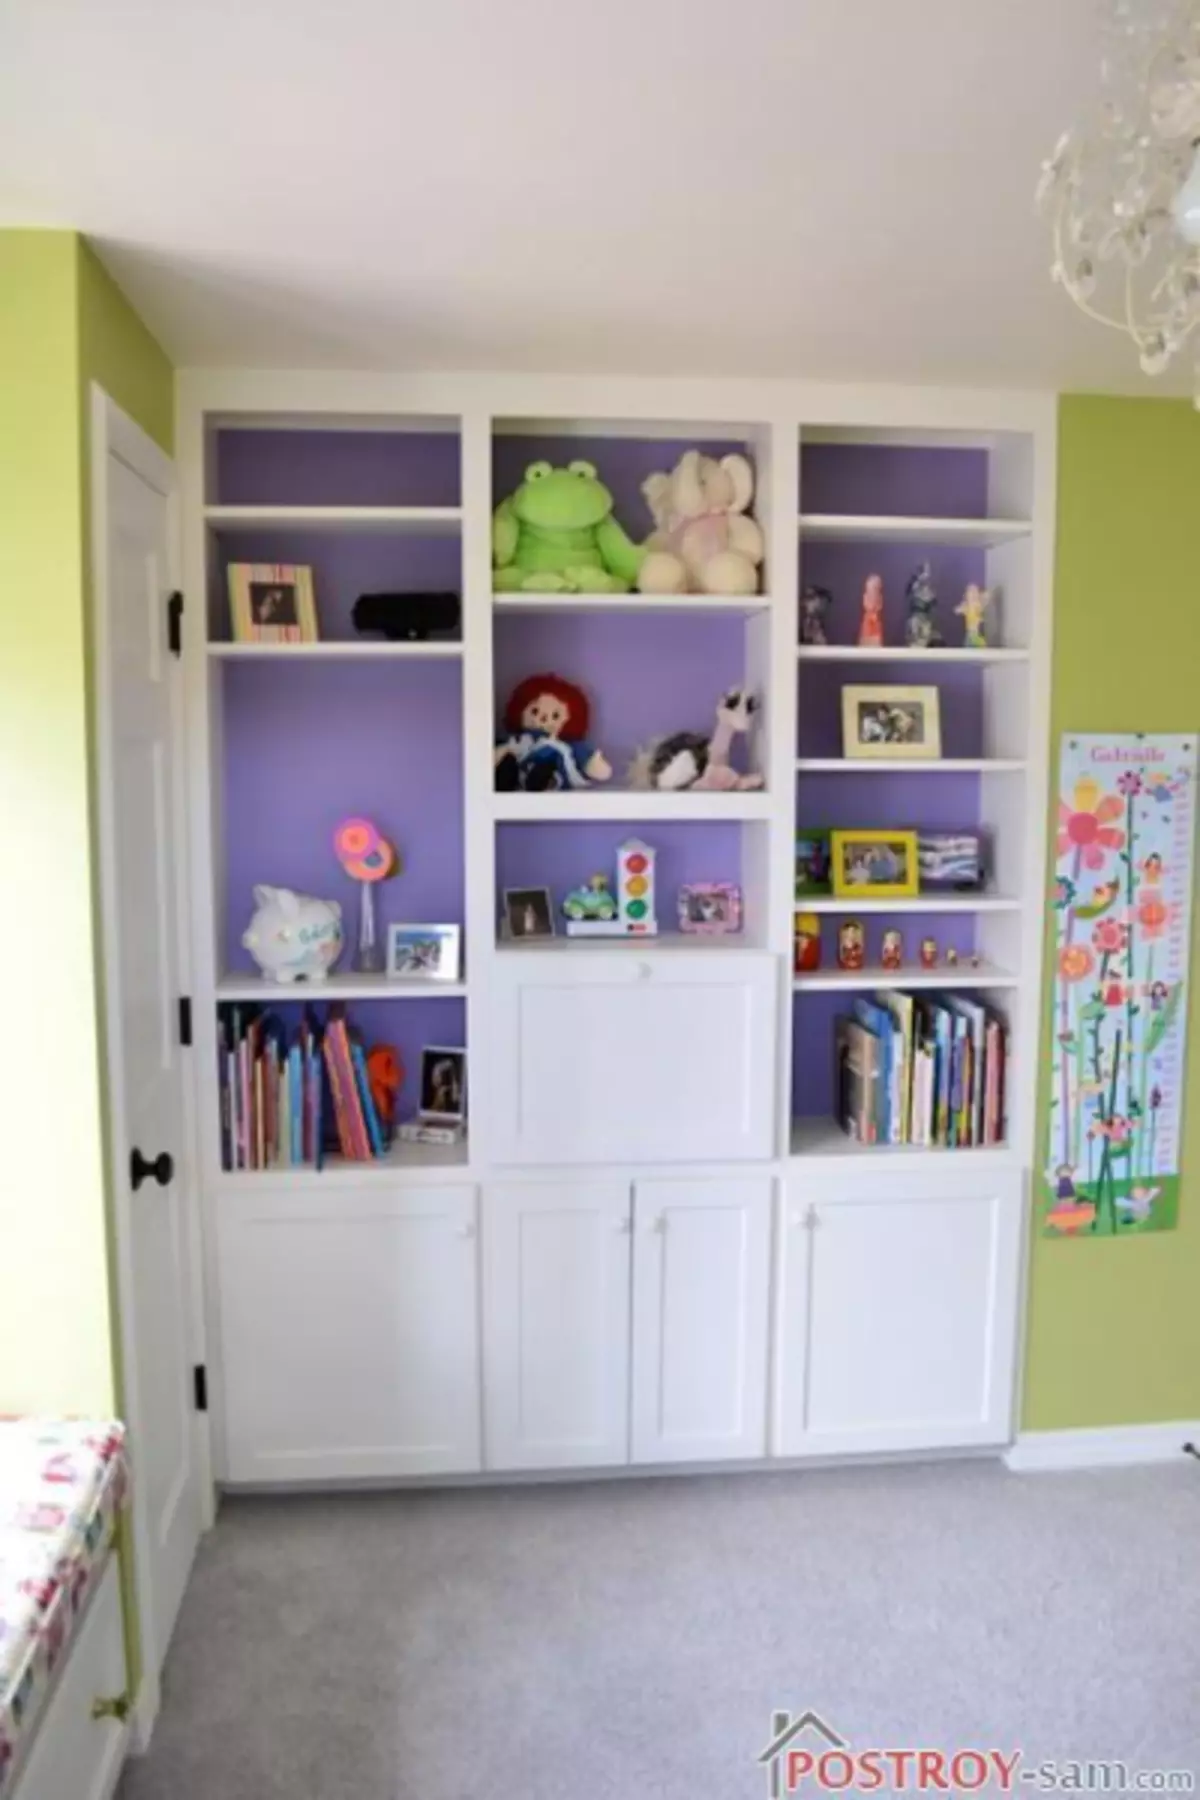 Дизајн дечије собе за девојчицу. Фото ентеријер